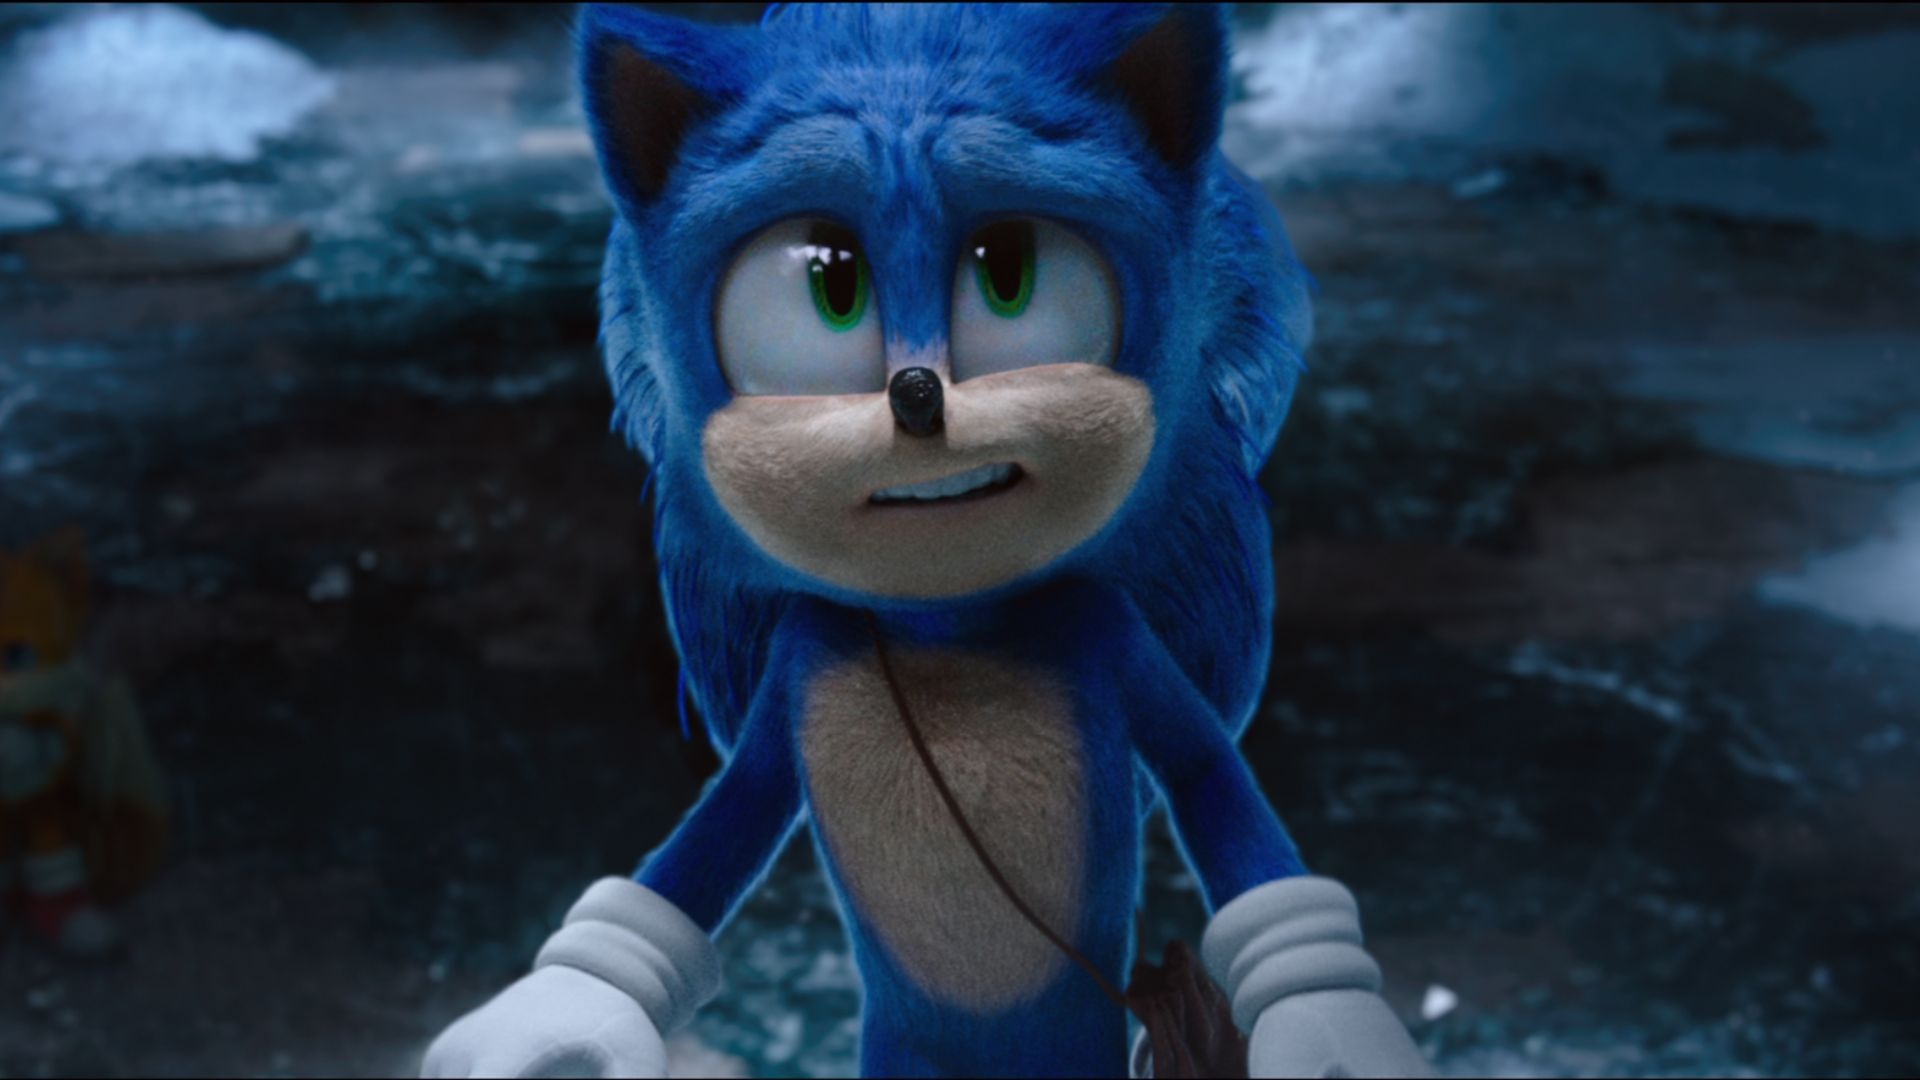 Cena de Sonic 2: O Filme (2022)